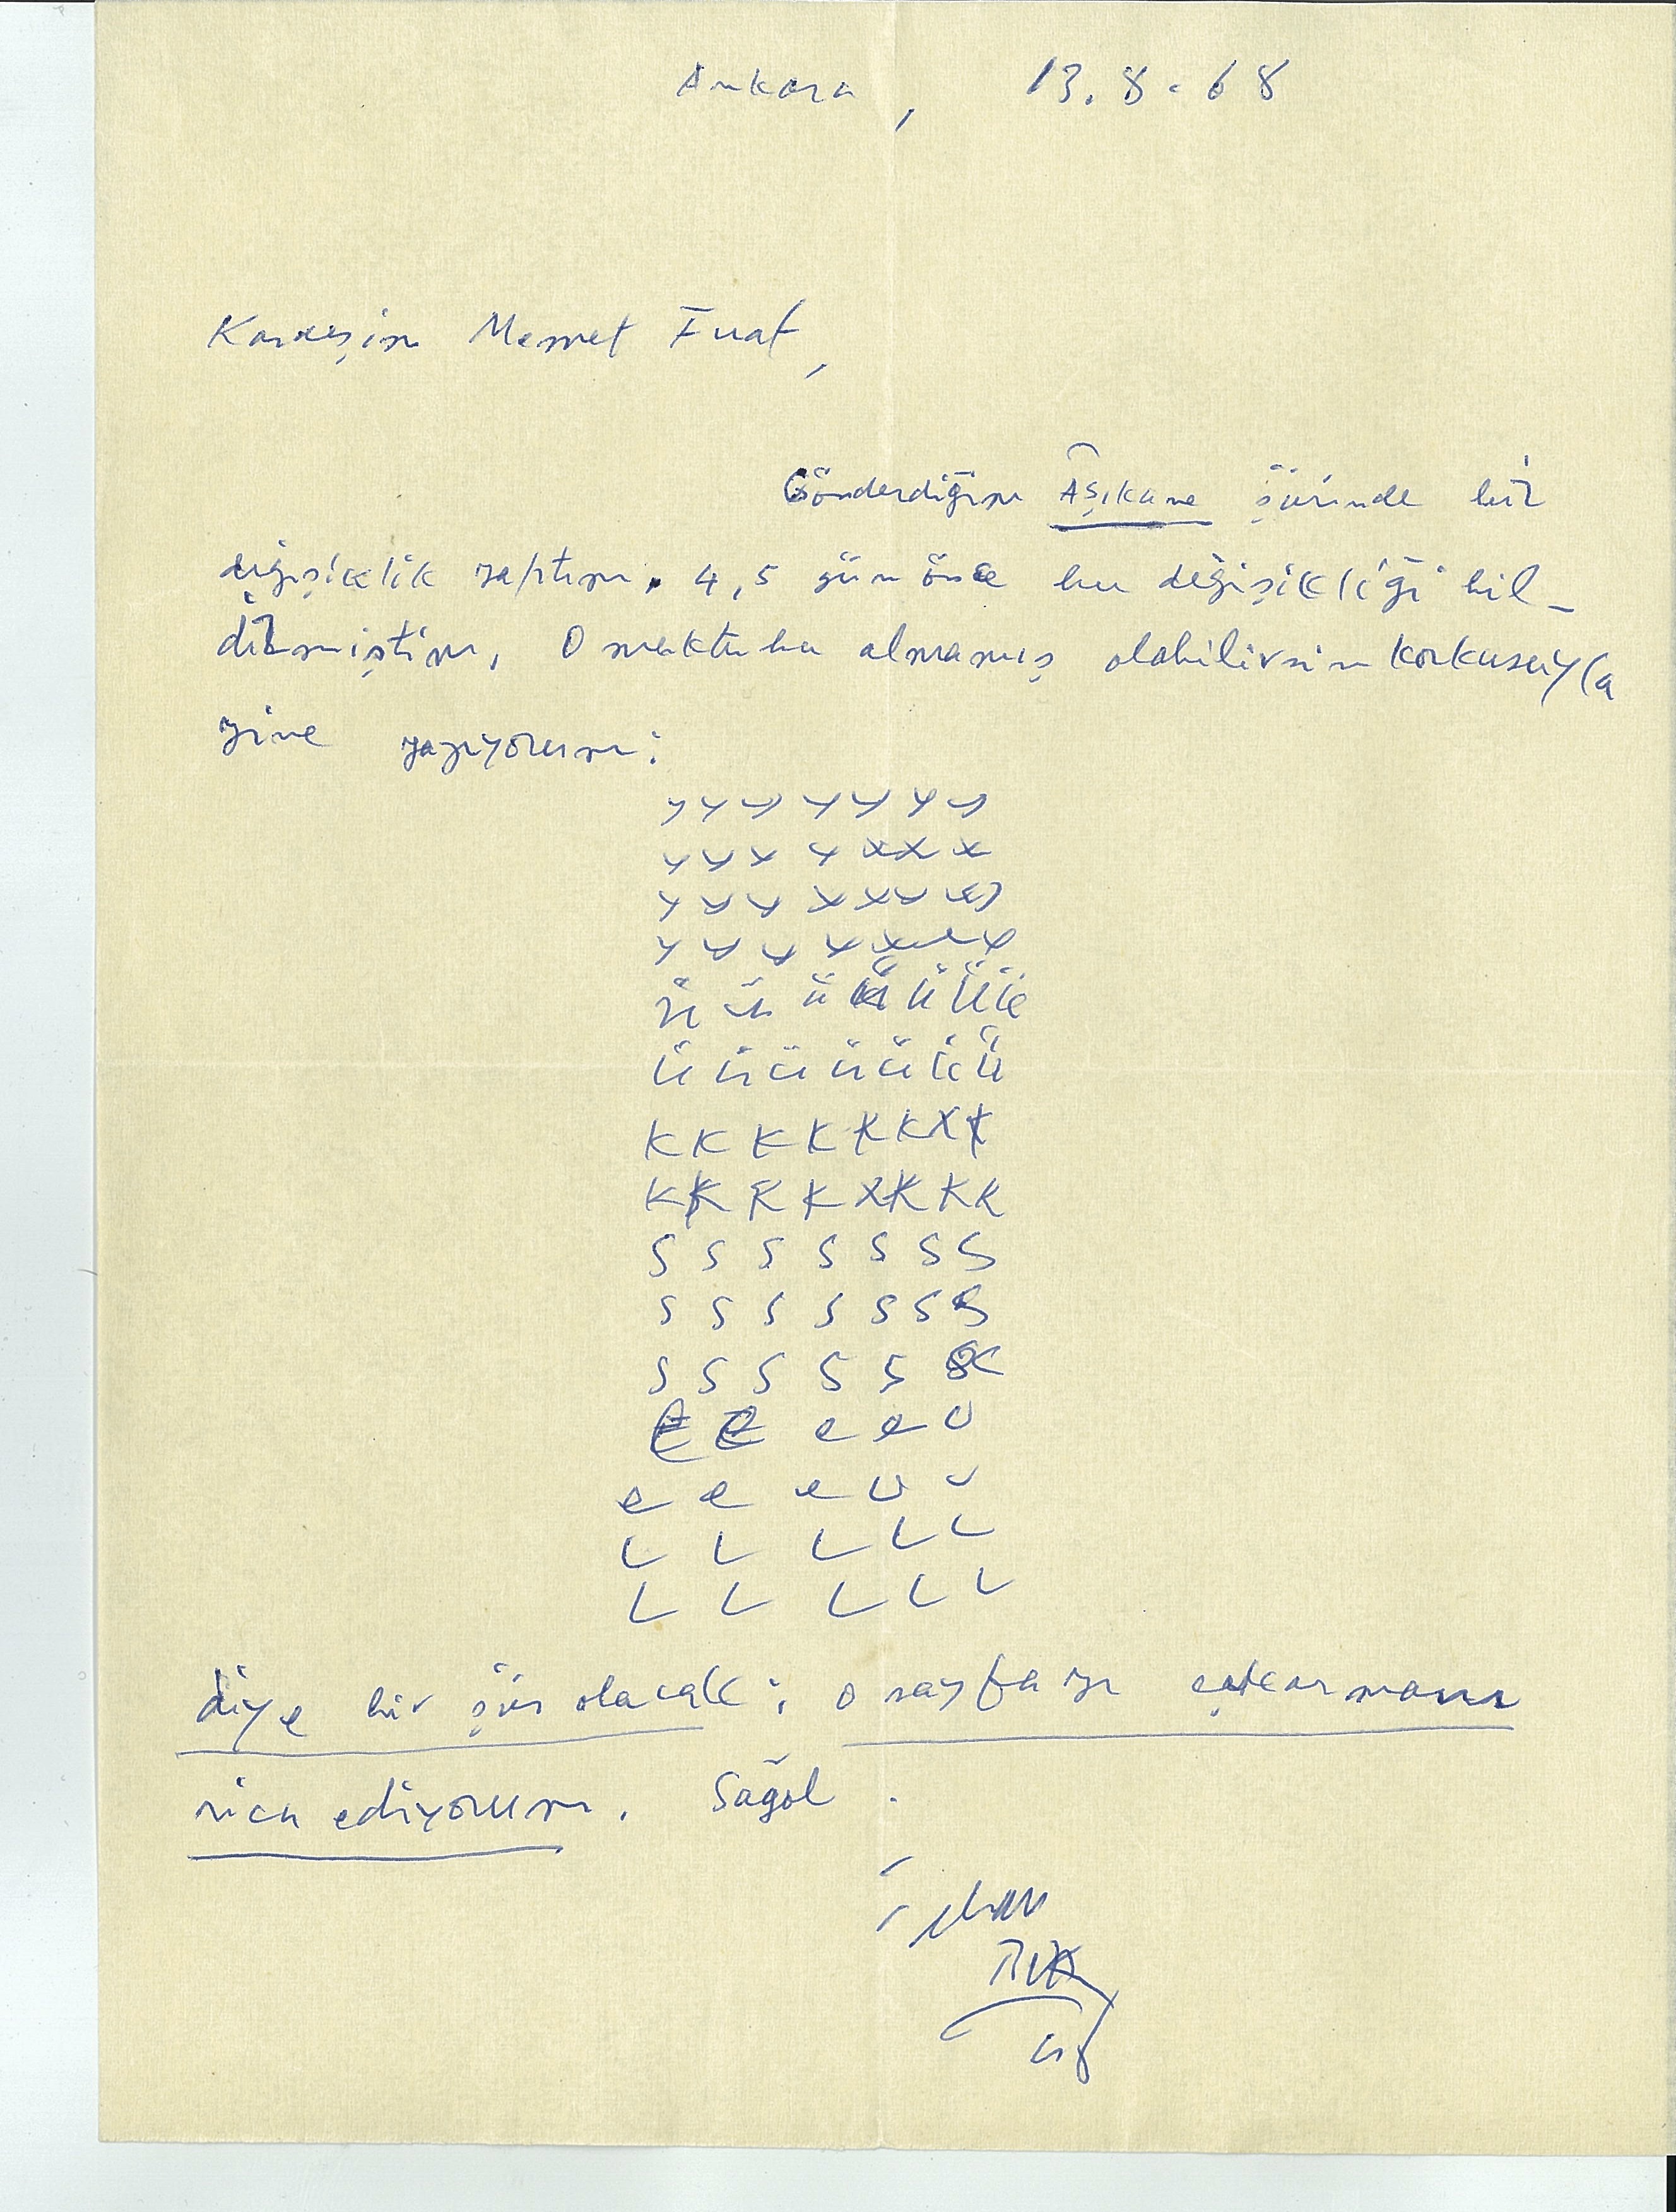 İlhan Berk’ten Memet Fuat’a 13.8.1968 tarihli mektup